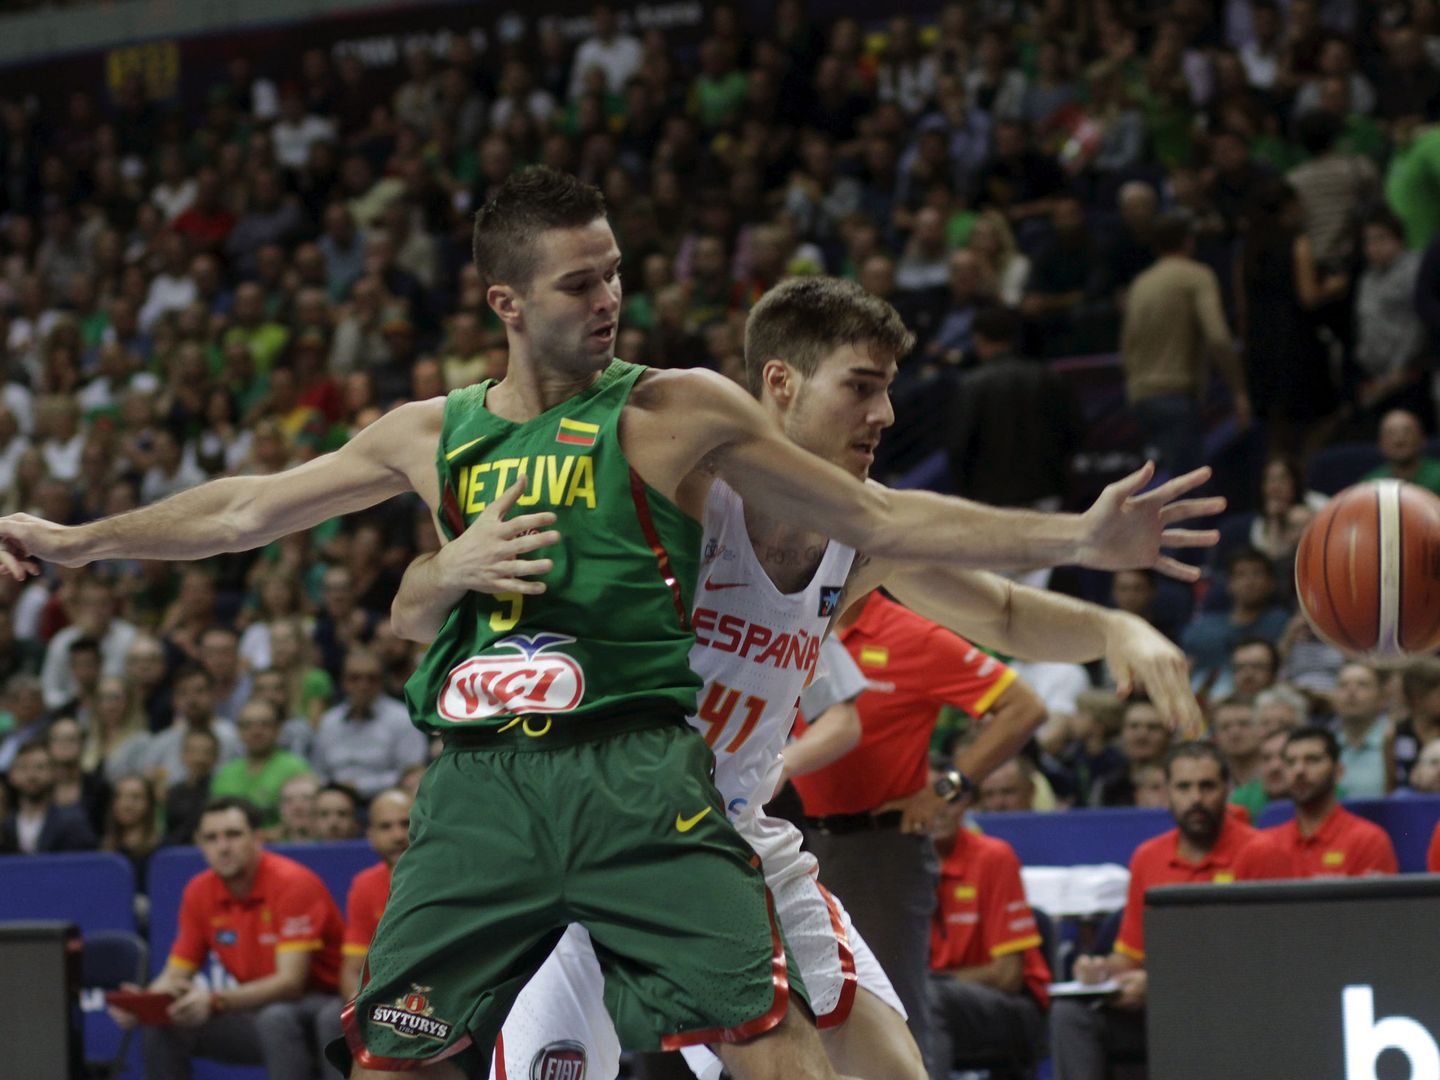 Lituania ha subido al podio en los dos últimos EuroBasket. (EFE)